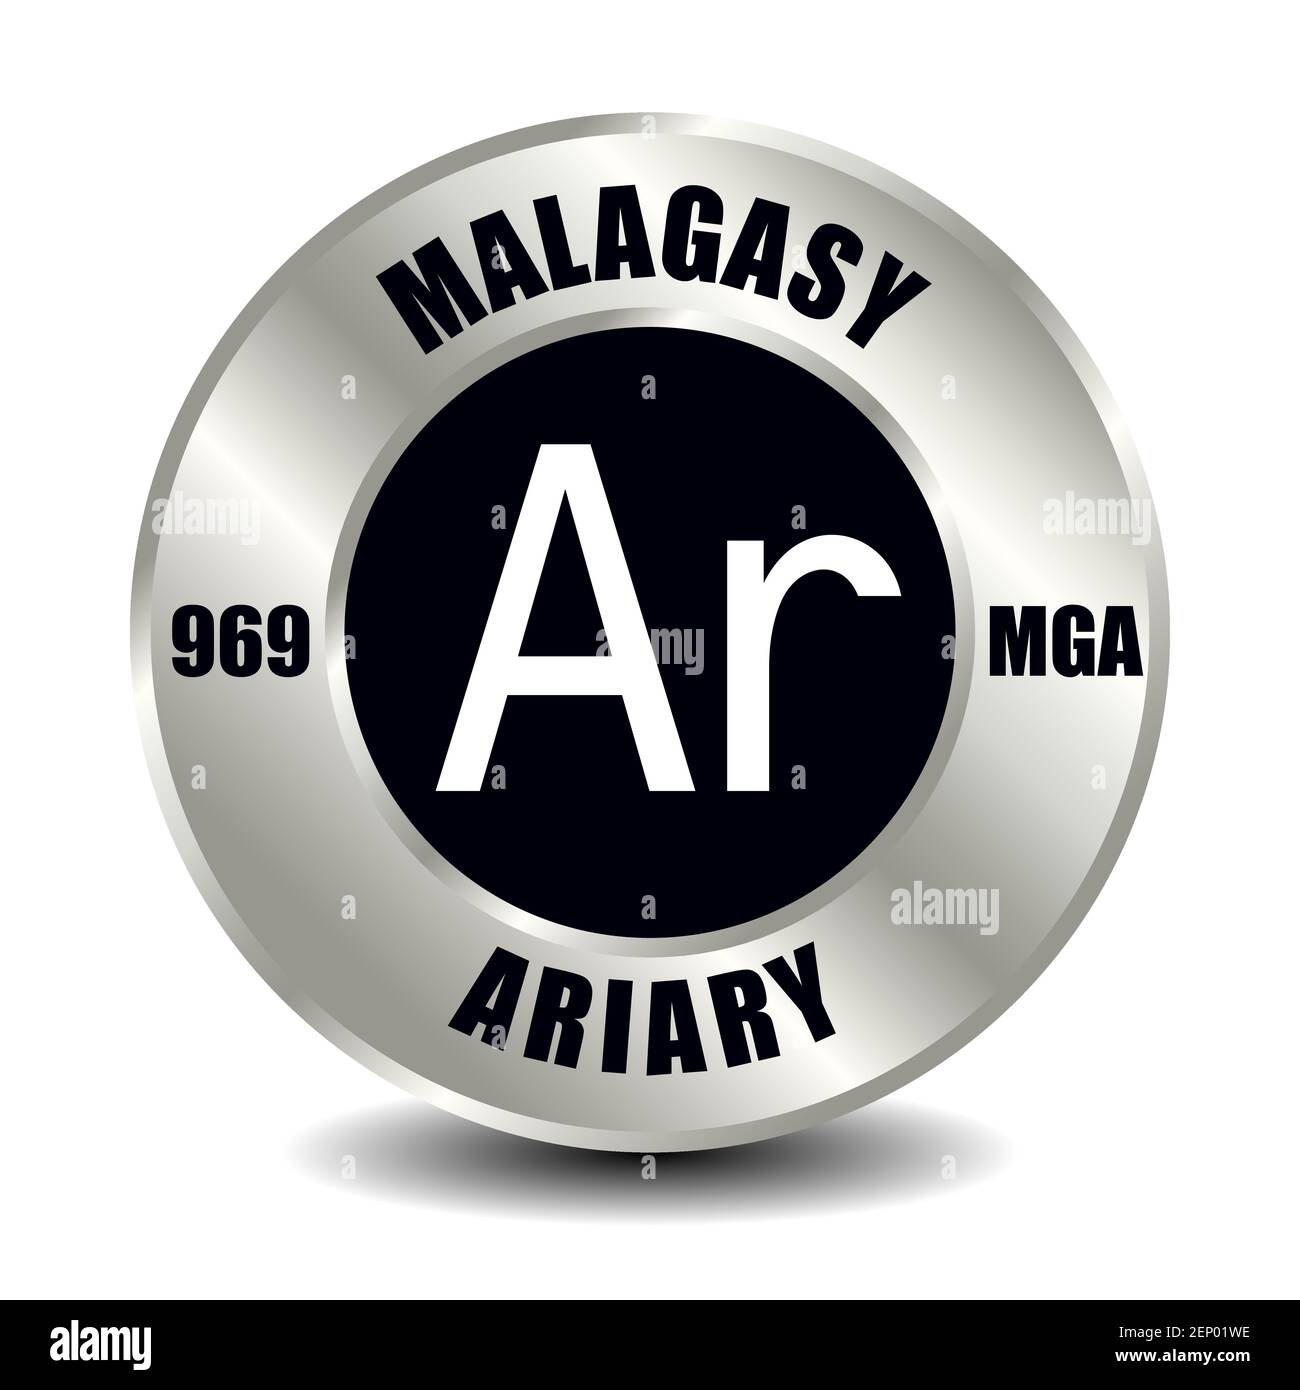 Madagaskar Geldsymbol isoliert auf runder Silbermünze. Vektorzeichen des Währungssymbols mit internationalem ISO-Code und Abkürzung Stock Vektor